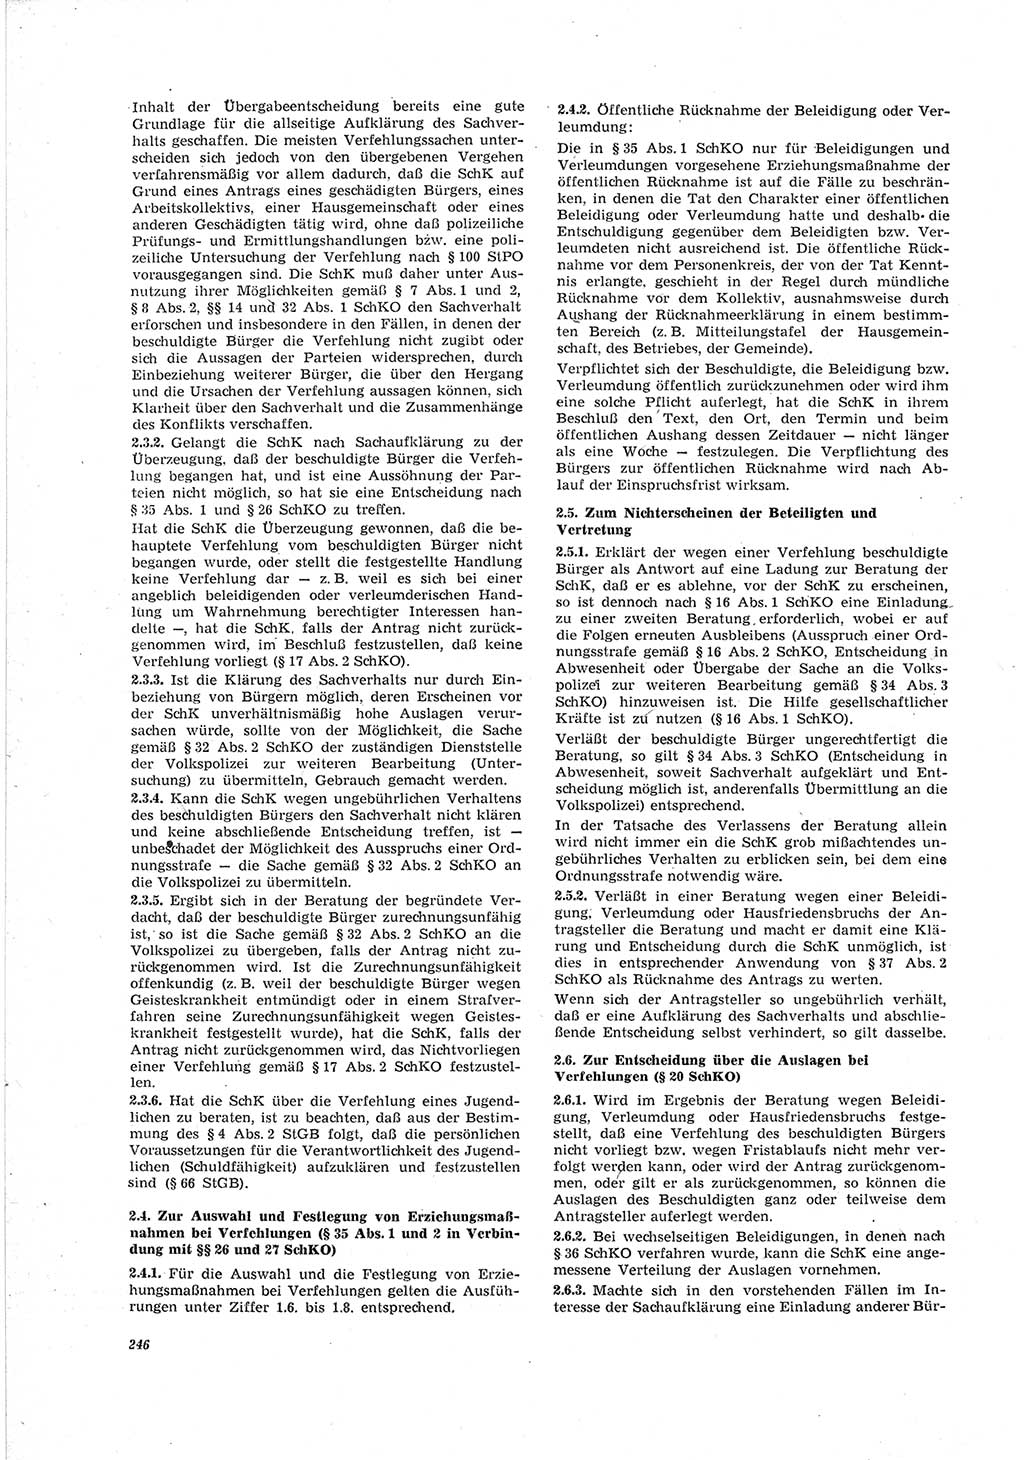 Neue Justiz (NJ), Zeitschrift für Recht und Rechtswissenschaft [Deutsche Demokratische Republik (DDR)], 23. Jahrgang 1969, Seite 246 (NJ DDR 1969, S. 246)